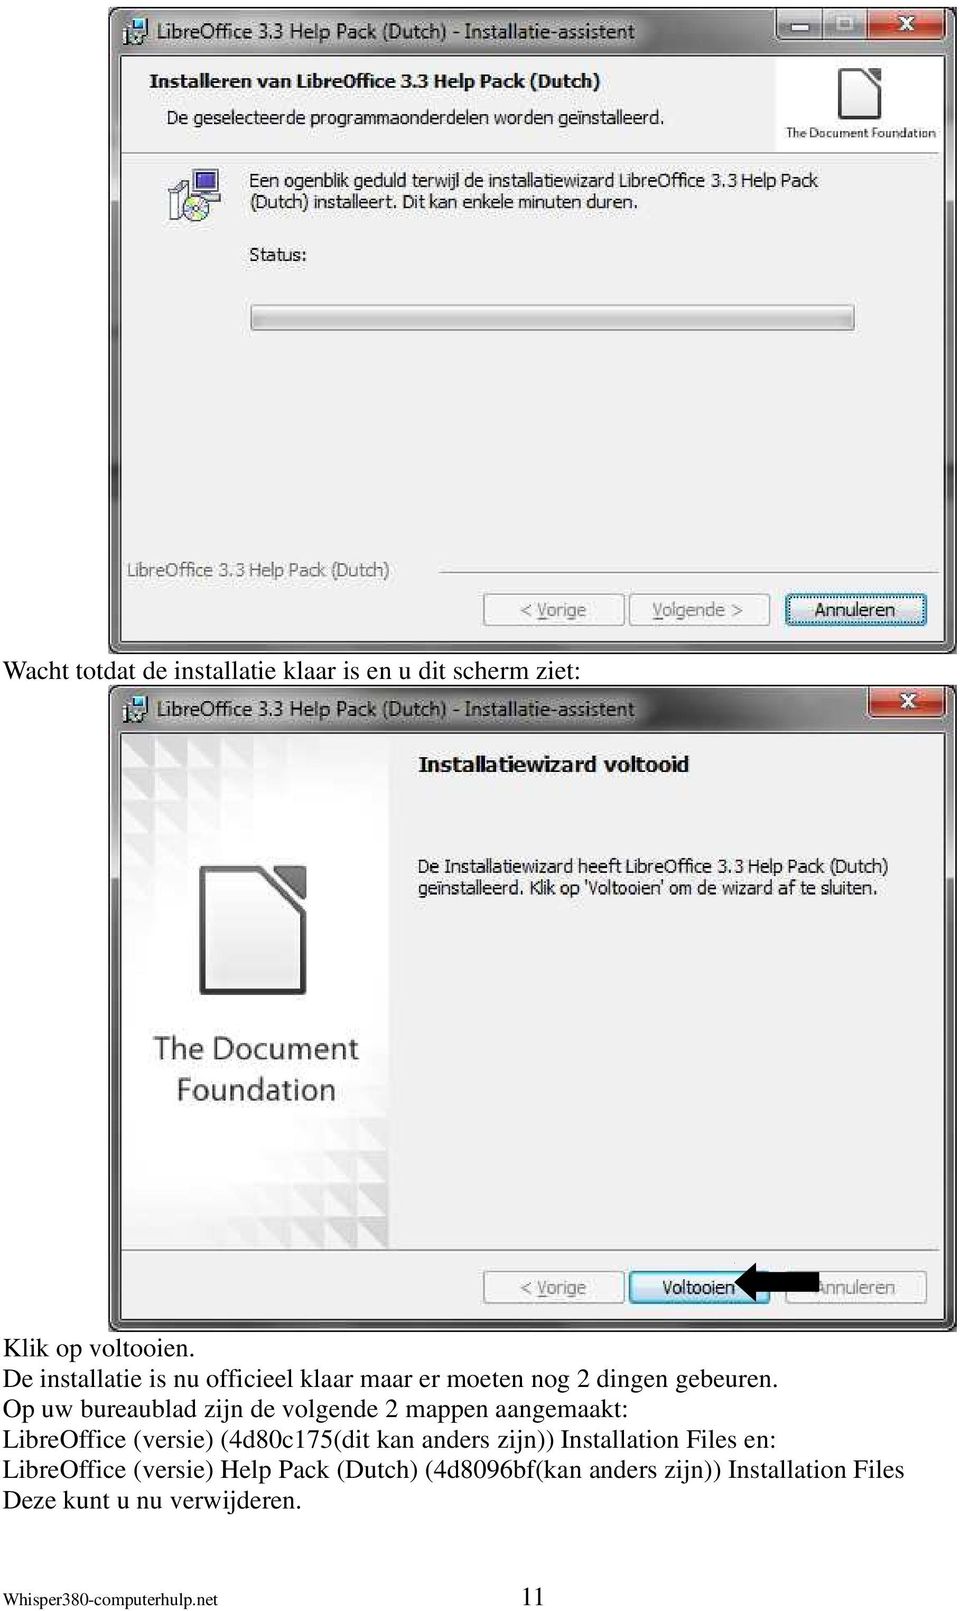 Op uw bureaublad zijn de volgende 2 mappen aangemaakt: LibreOffice (versie) (4d80c175(dit kan anders